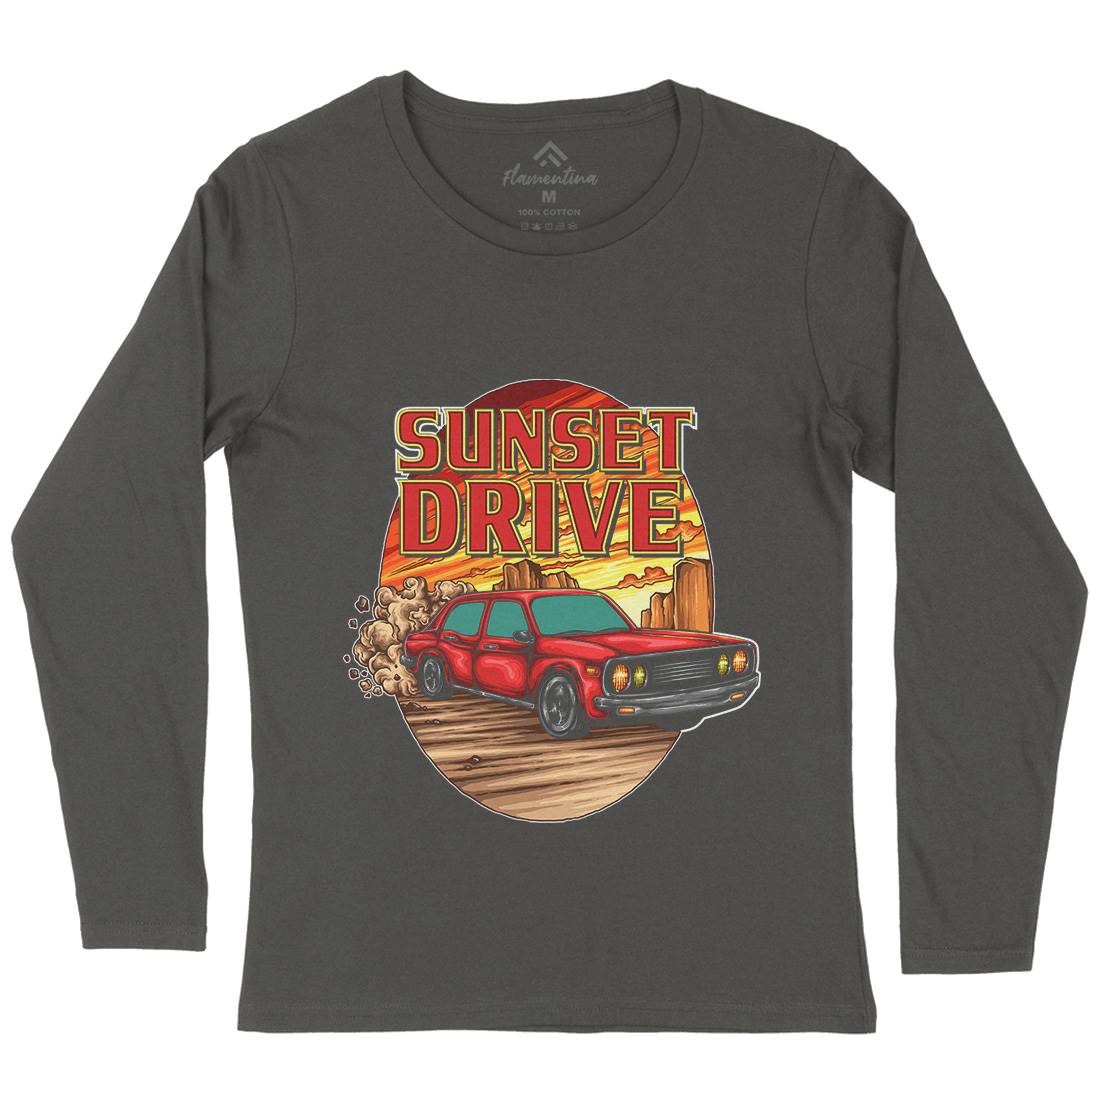 Sunset Drive Womens Long Sleeve T-Shirt Cars A472